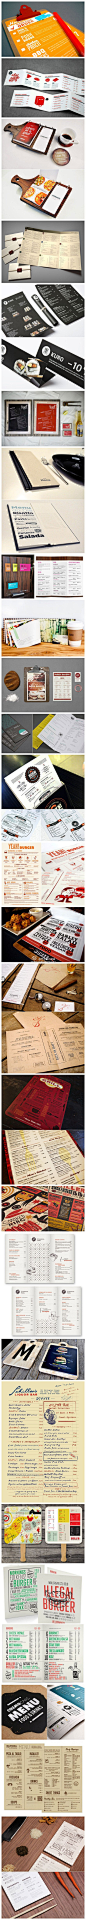 #设计在线#一组创意餐厅菜单设计.jpg